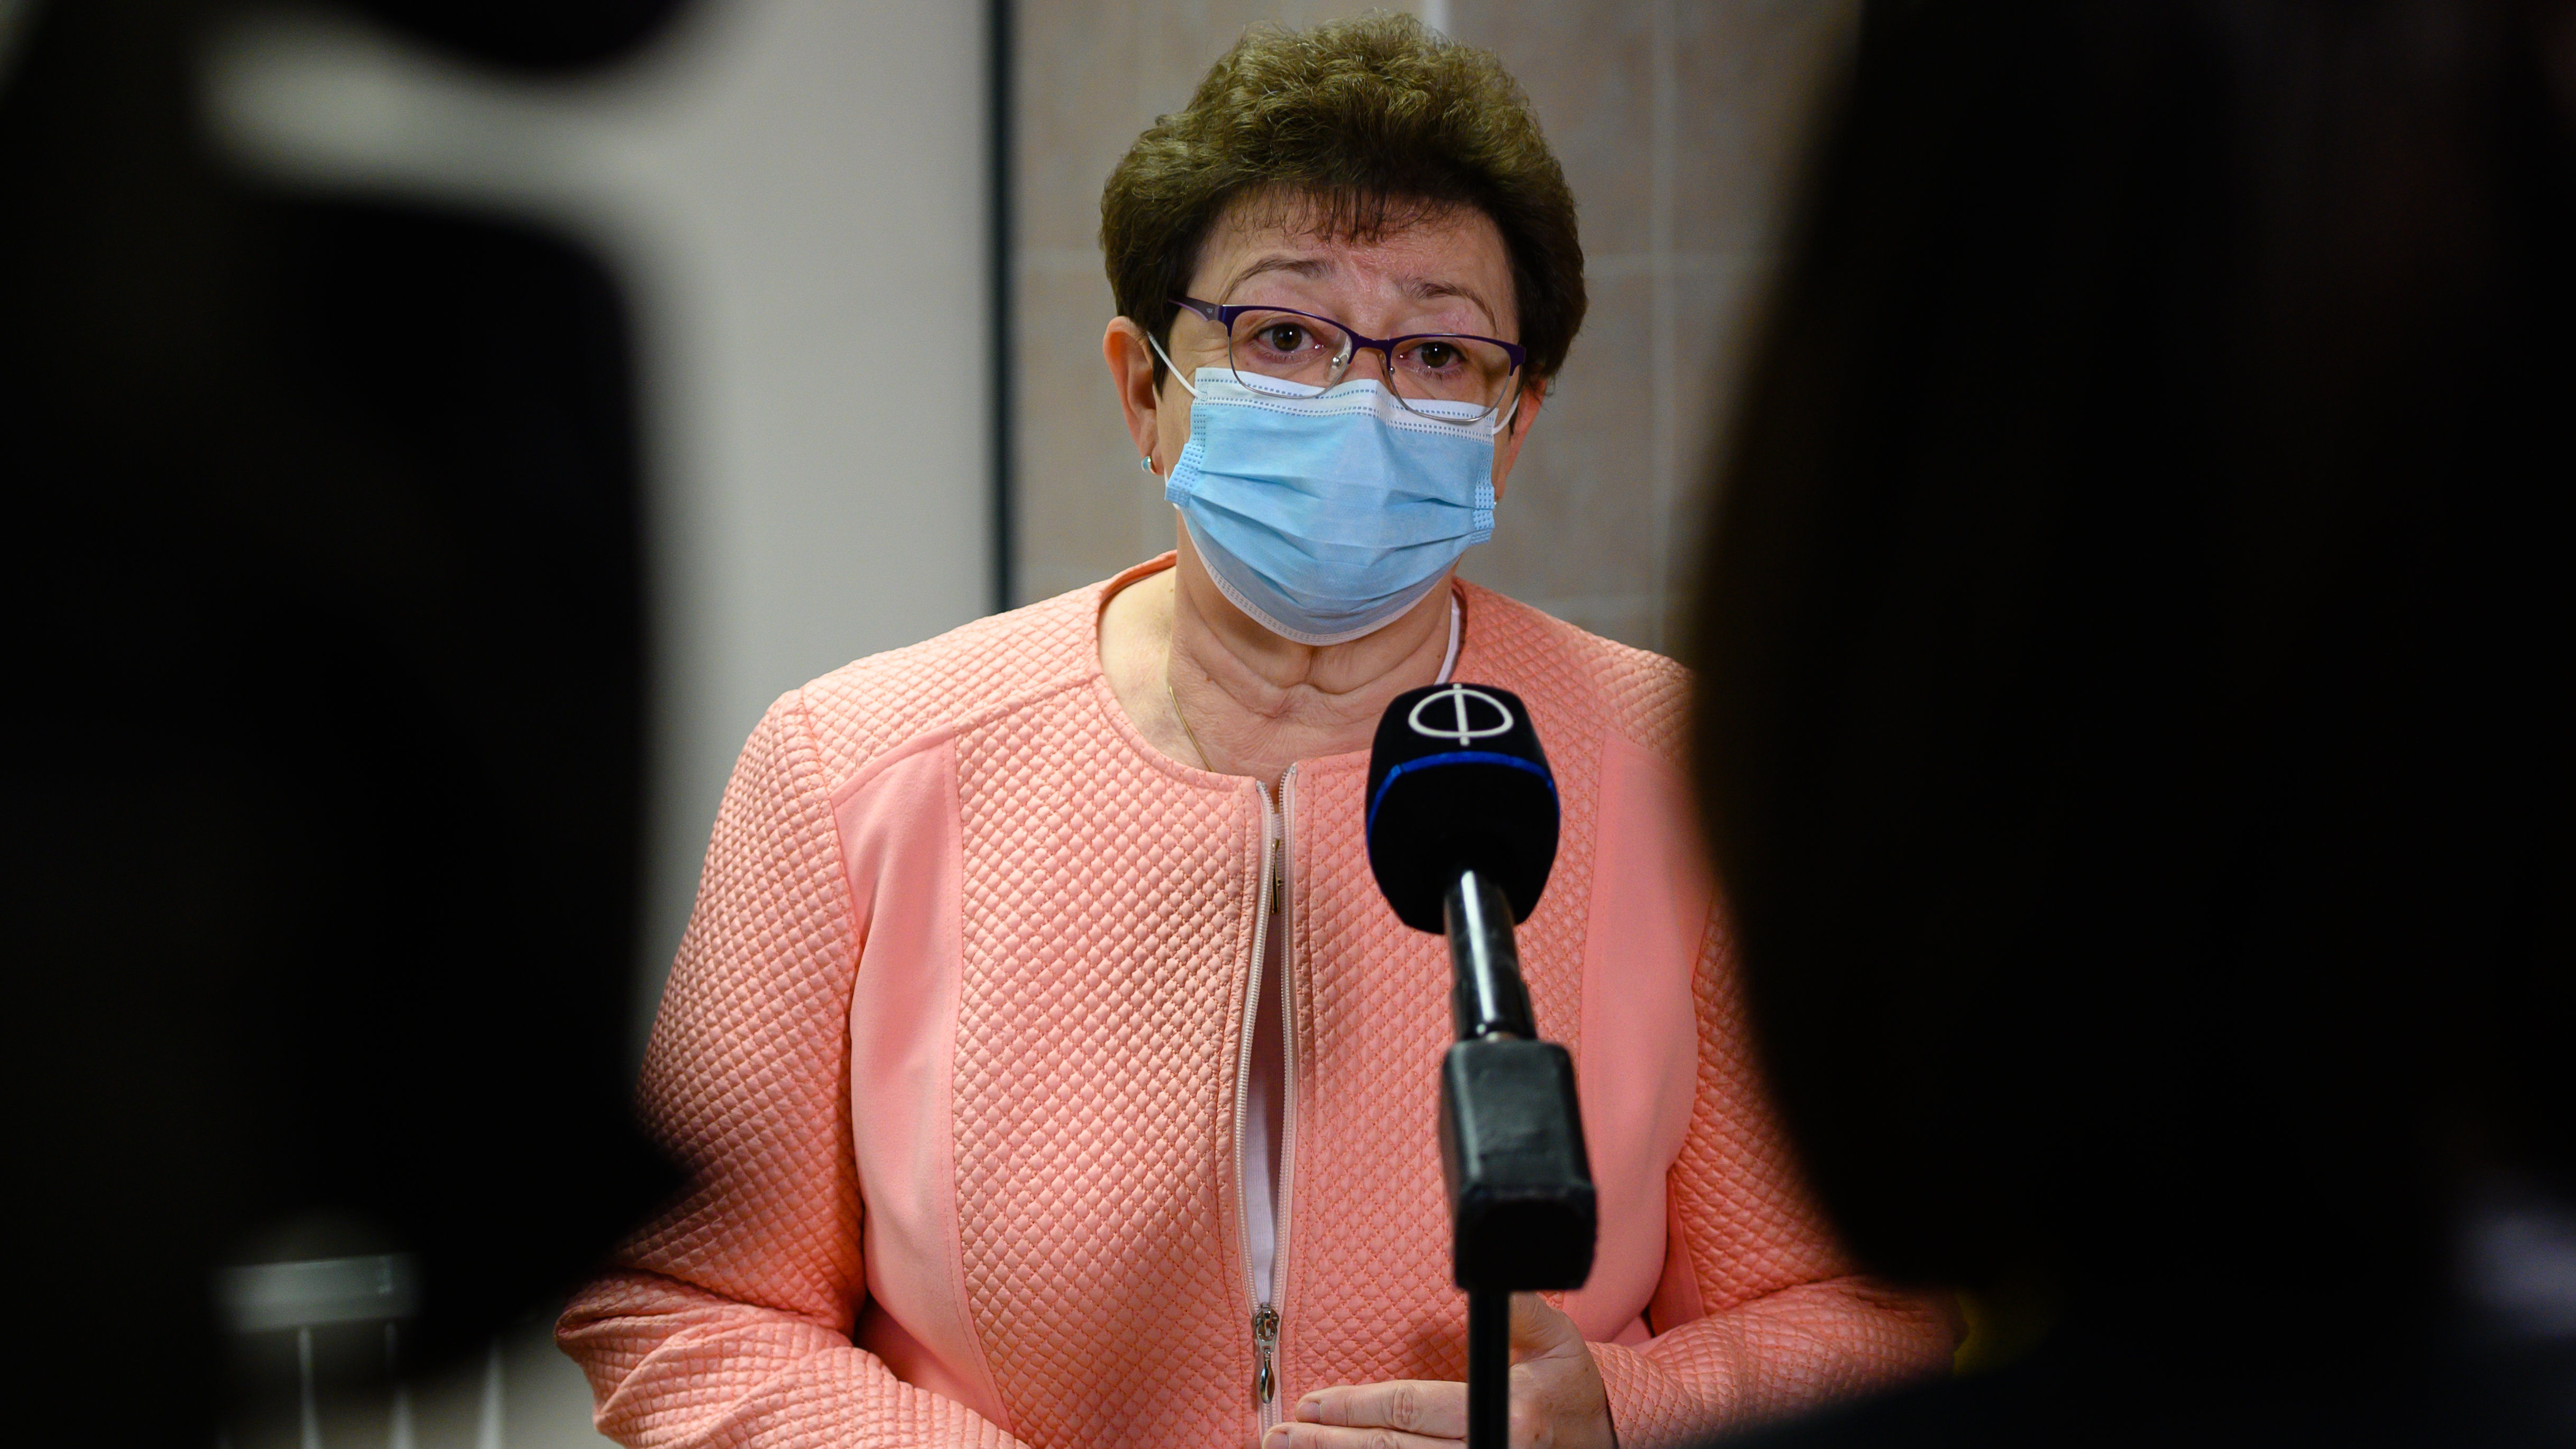 A rendelkezésre álló kínai vakcinát mind eloltották – mondta az államtitkár